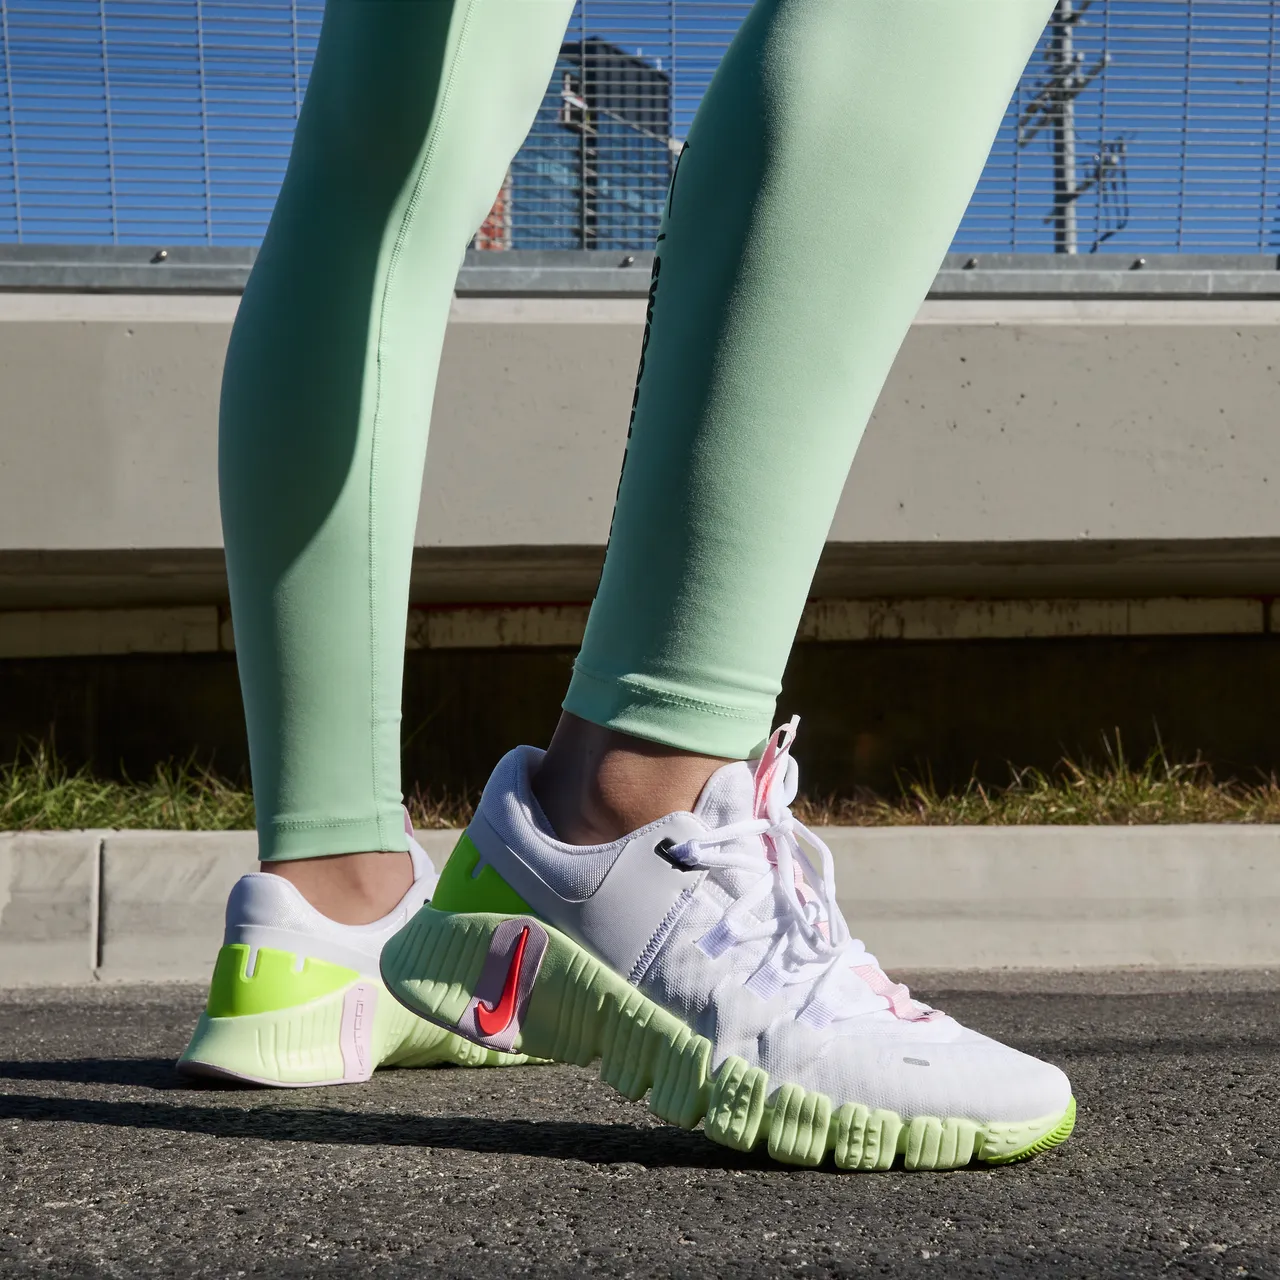 Nike Free Metcon 5 Women's Workout Shoes - White